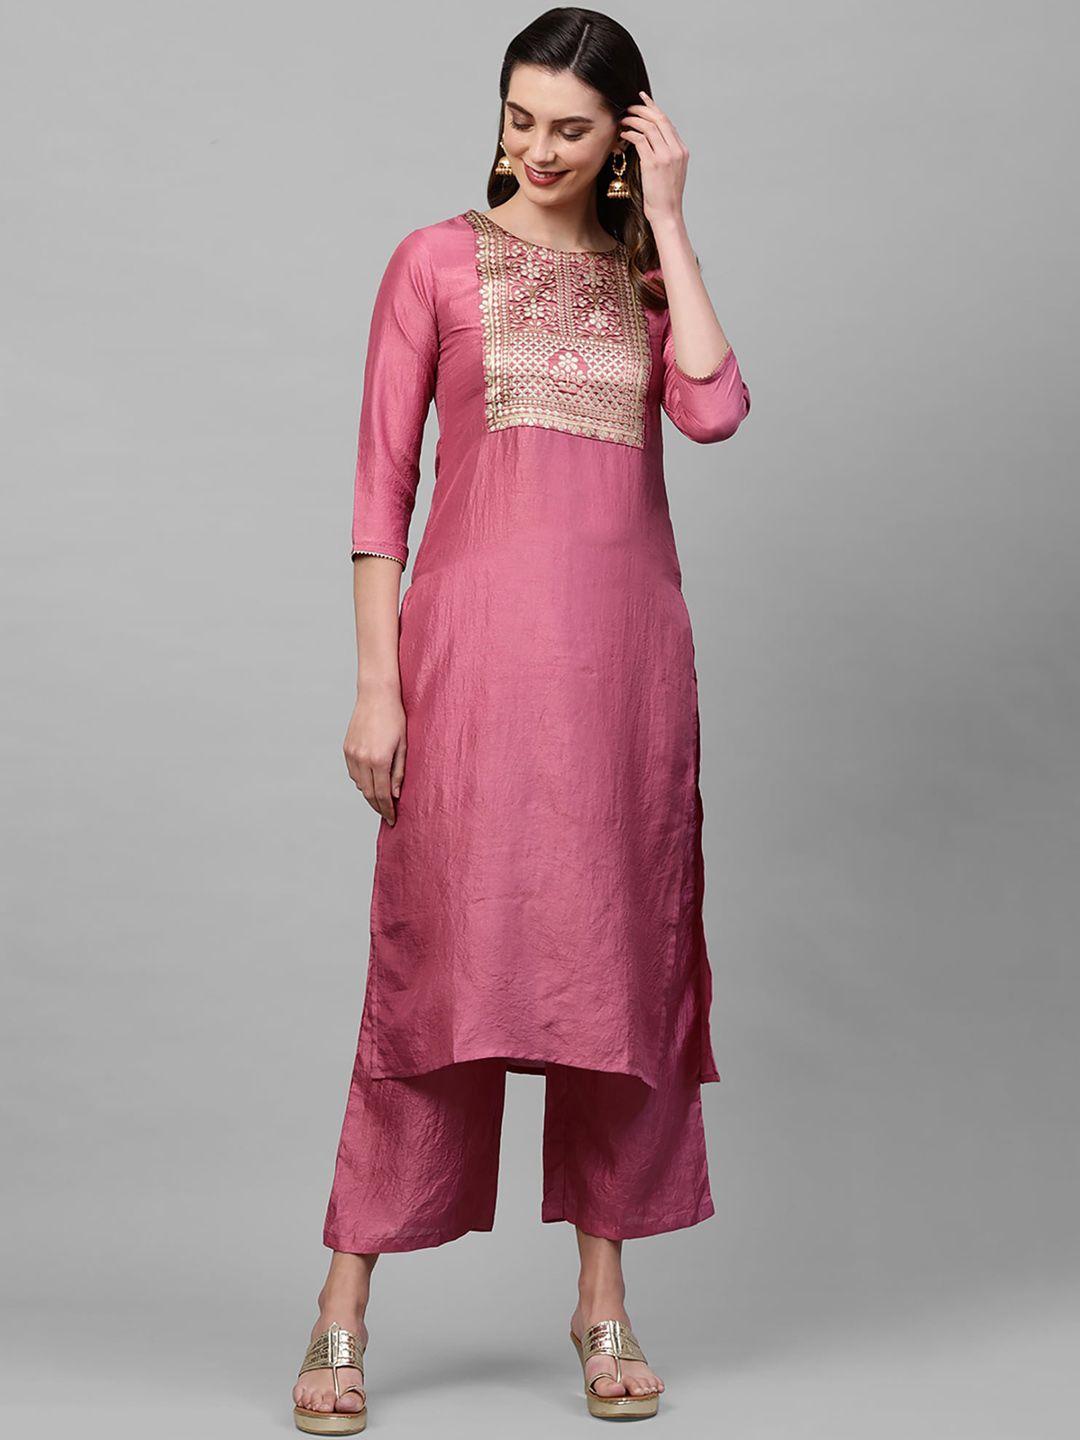 indo era women pink ethnic motifs yoke design thread work kurta